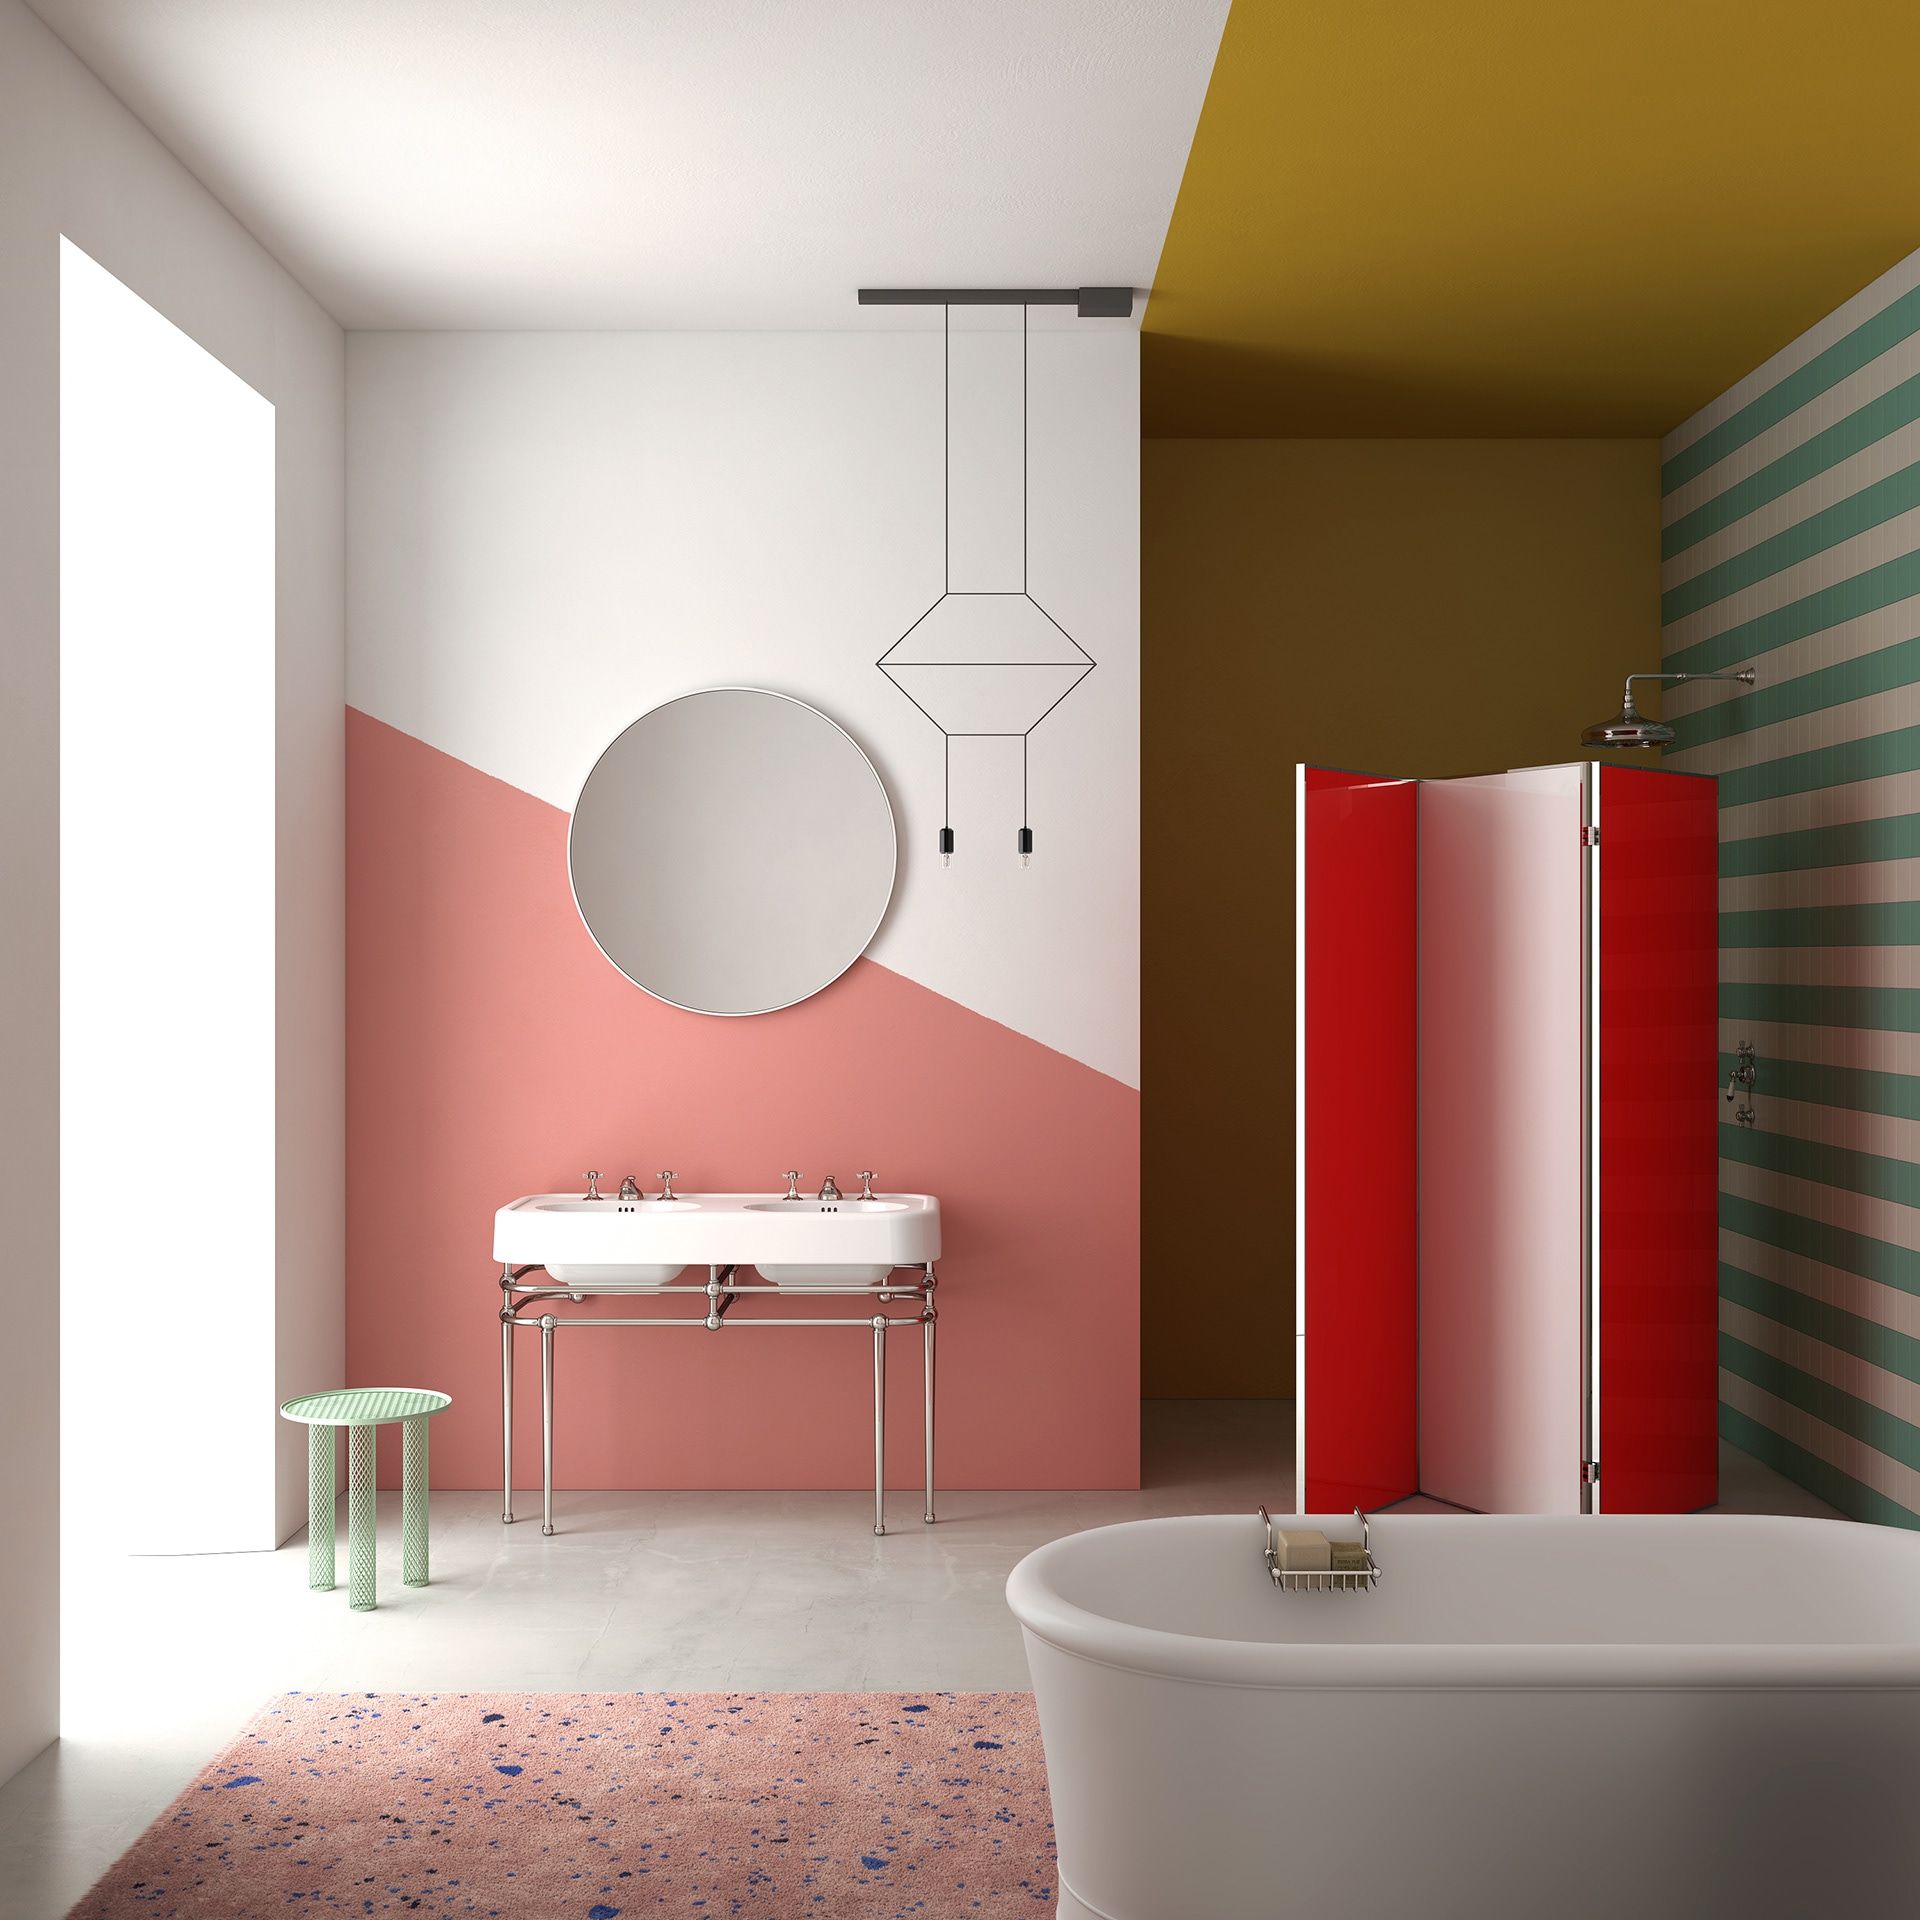 Bức tường trắng - hồng phấn ở bồn rửa tay có chút tương đồng với thảm trải sàn ở bồn tắm. Họa tiết kẻ sọc ngang trắng - xanh giúp 'nới rộng' không gian và một sắc vàng mù tạt ngay vị trí vòi sen làm điểm nhấn cho phòng tắm.